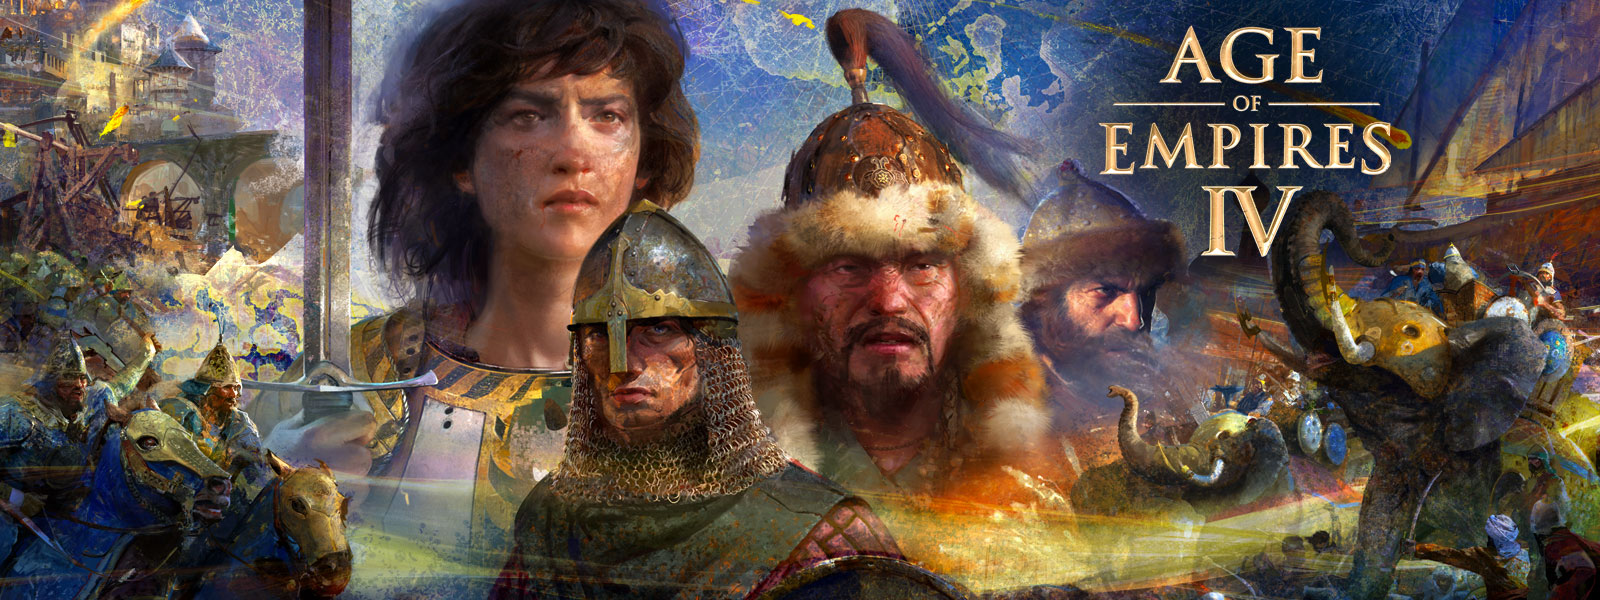 Age of Empires IV. Quatro personagens rodeadas por cenas de guerra, elefantes e homens a cavalo sobre um fundo com um mapa